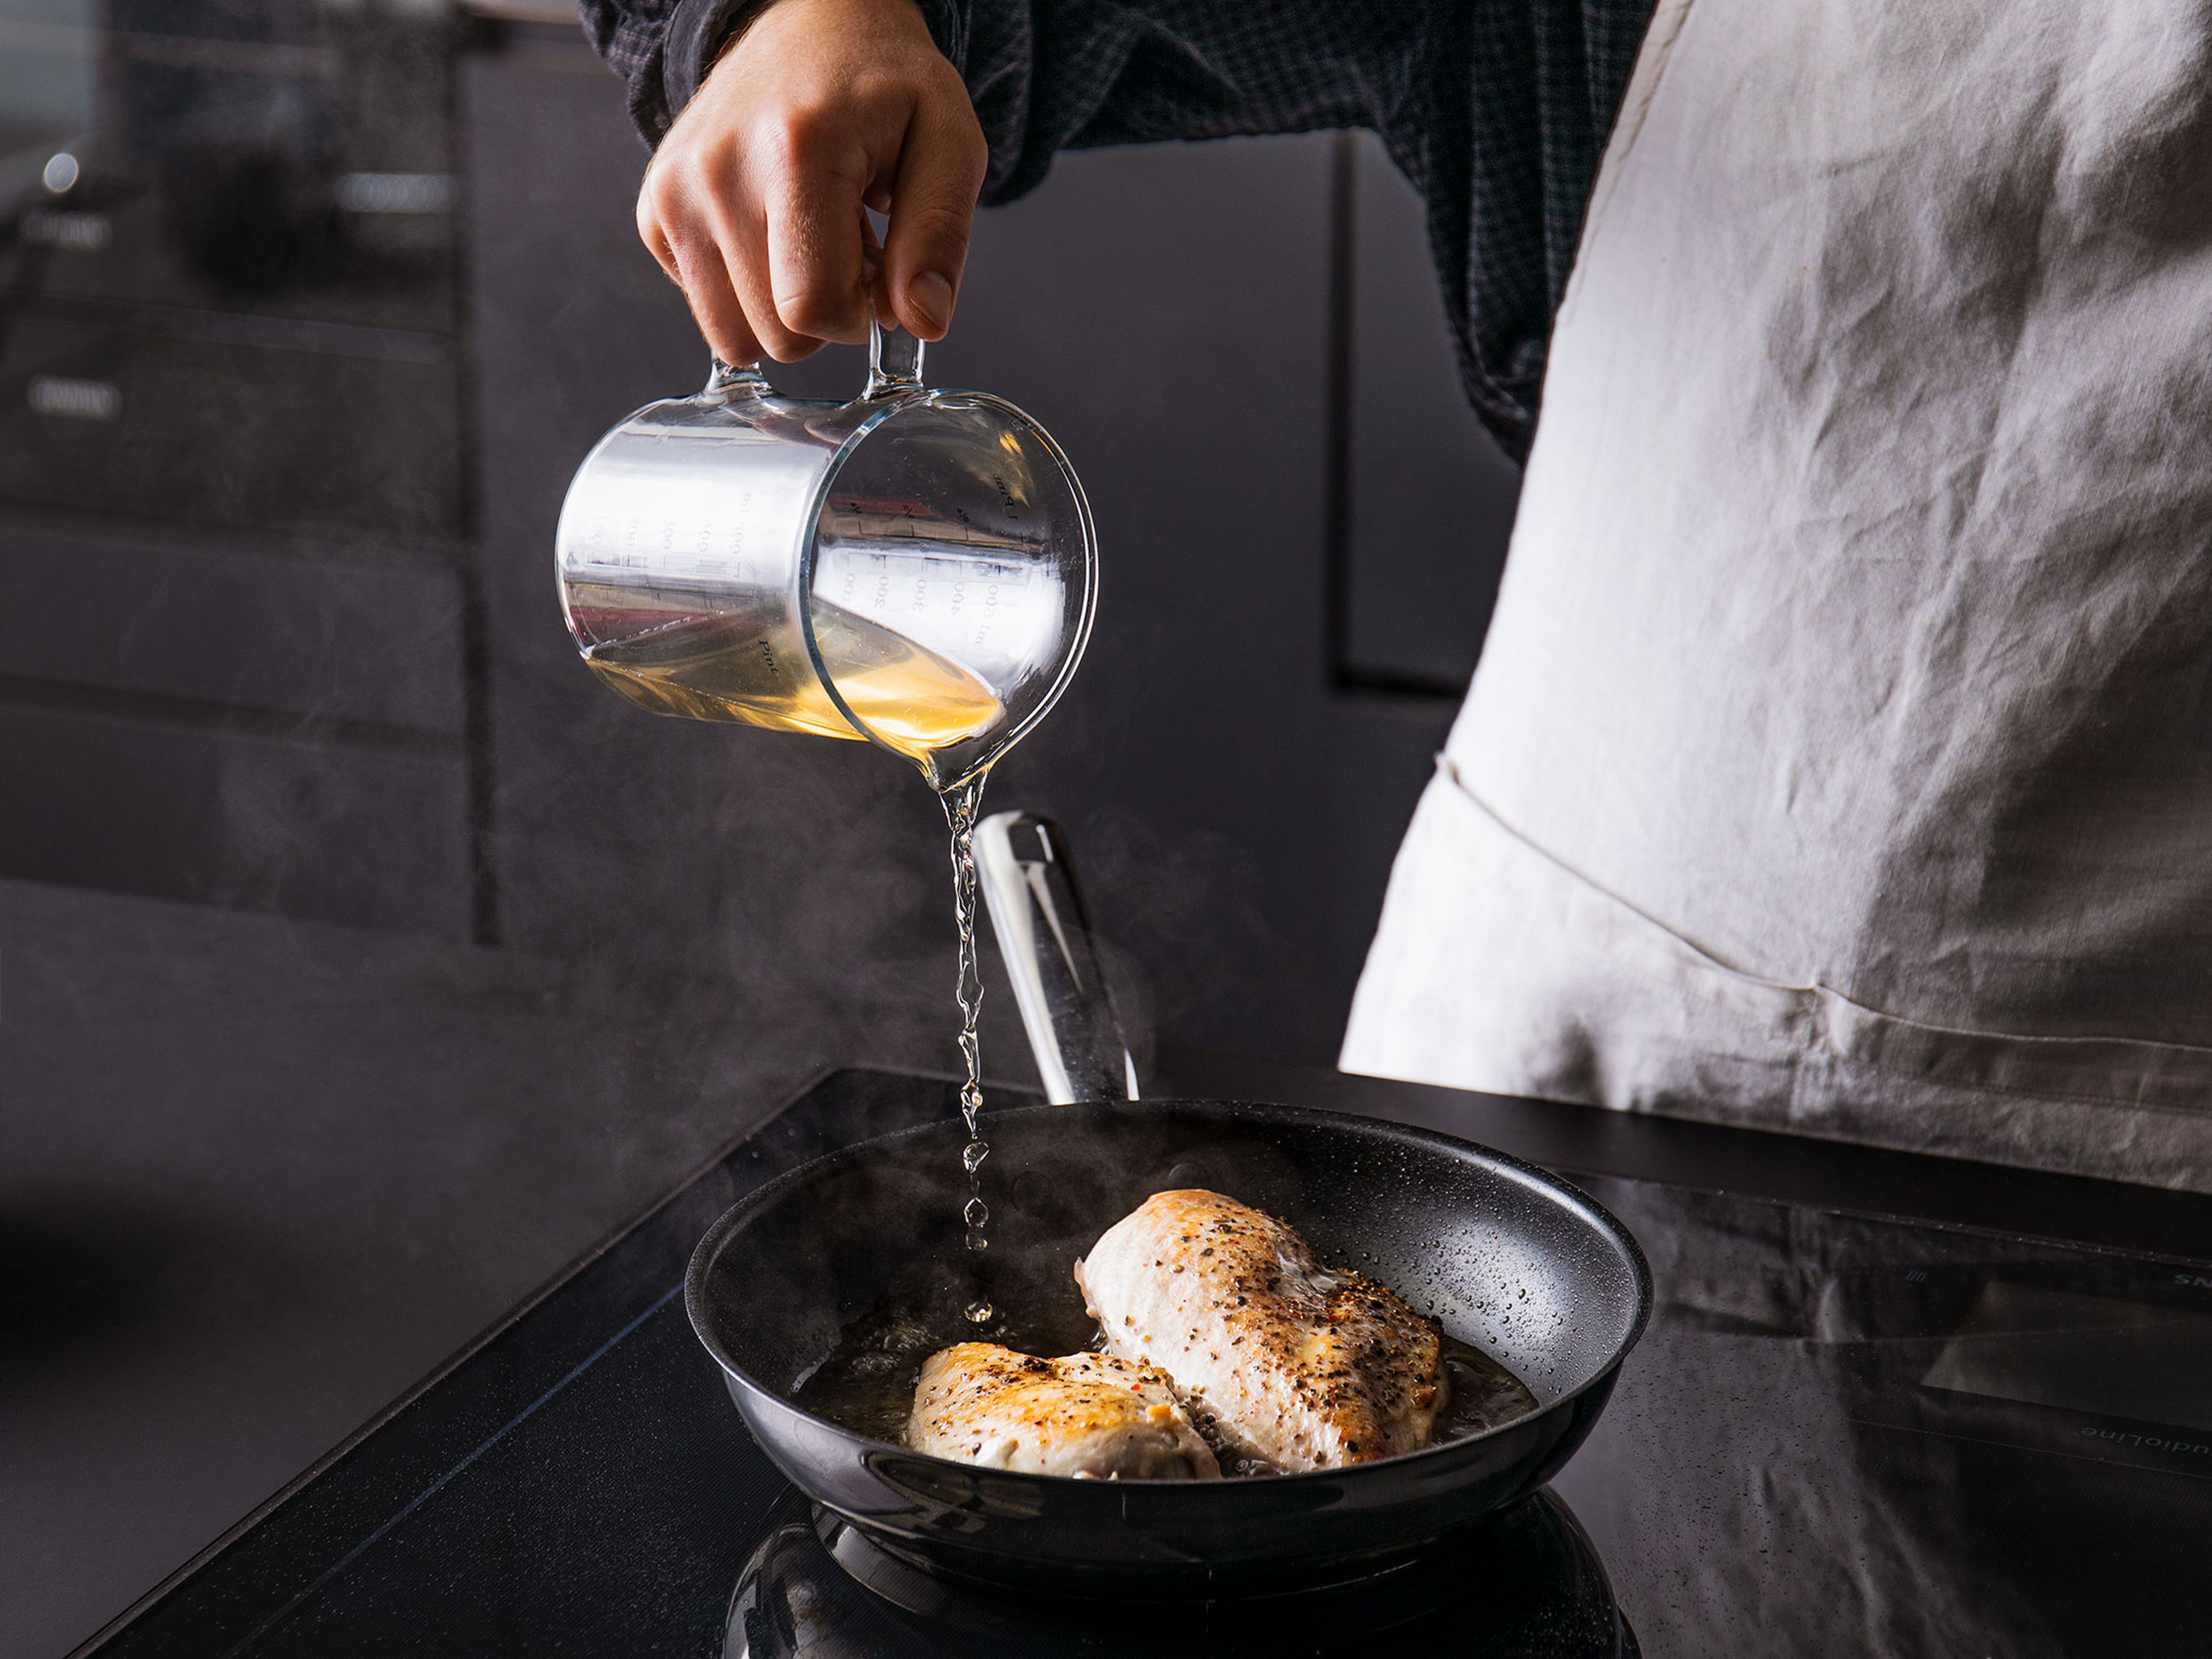 Die Hühnerbrust auf beiden Seiten mit Salz und Pfeffer würzen. Anschließend in einer Pfanne bei mittelhoher Hitze mit etwas Olivenöl für ca. 3-4 Min. pro Seite anbraten, bis sich eine braune Kruste bildet. Die Brühe hinzugeben und die Pfanne mit dem Deckel abdecken. Für ca. 10 Min. kochen, oder bis der dickste Teil der Hühnerbrust eine innere Temperatur von 74°C aufweist. Anschließend aus der Pfanne nehmen, abkühlen lassen und auf einem Schneidebrett mit einer Gabel rupfend zerkleinern. Die Brühe beiseite stellen.